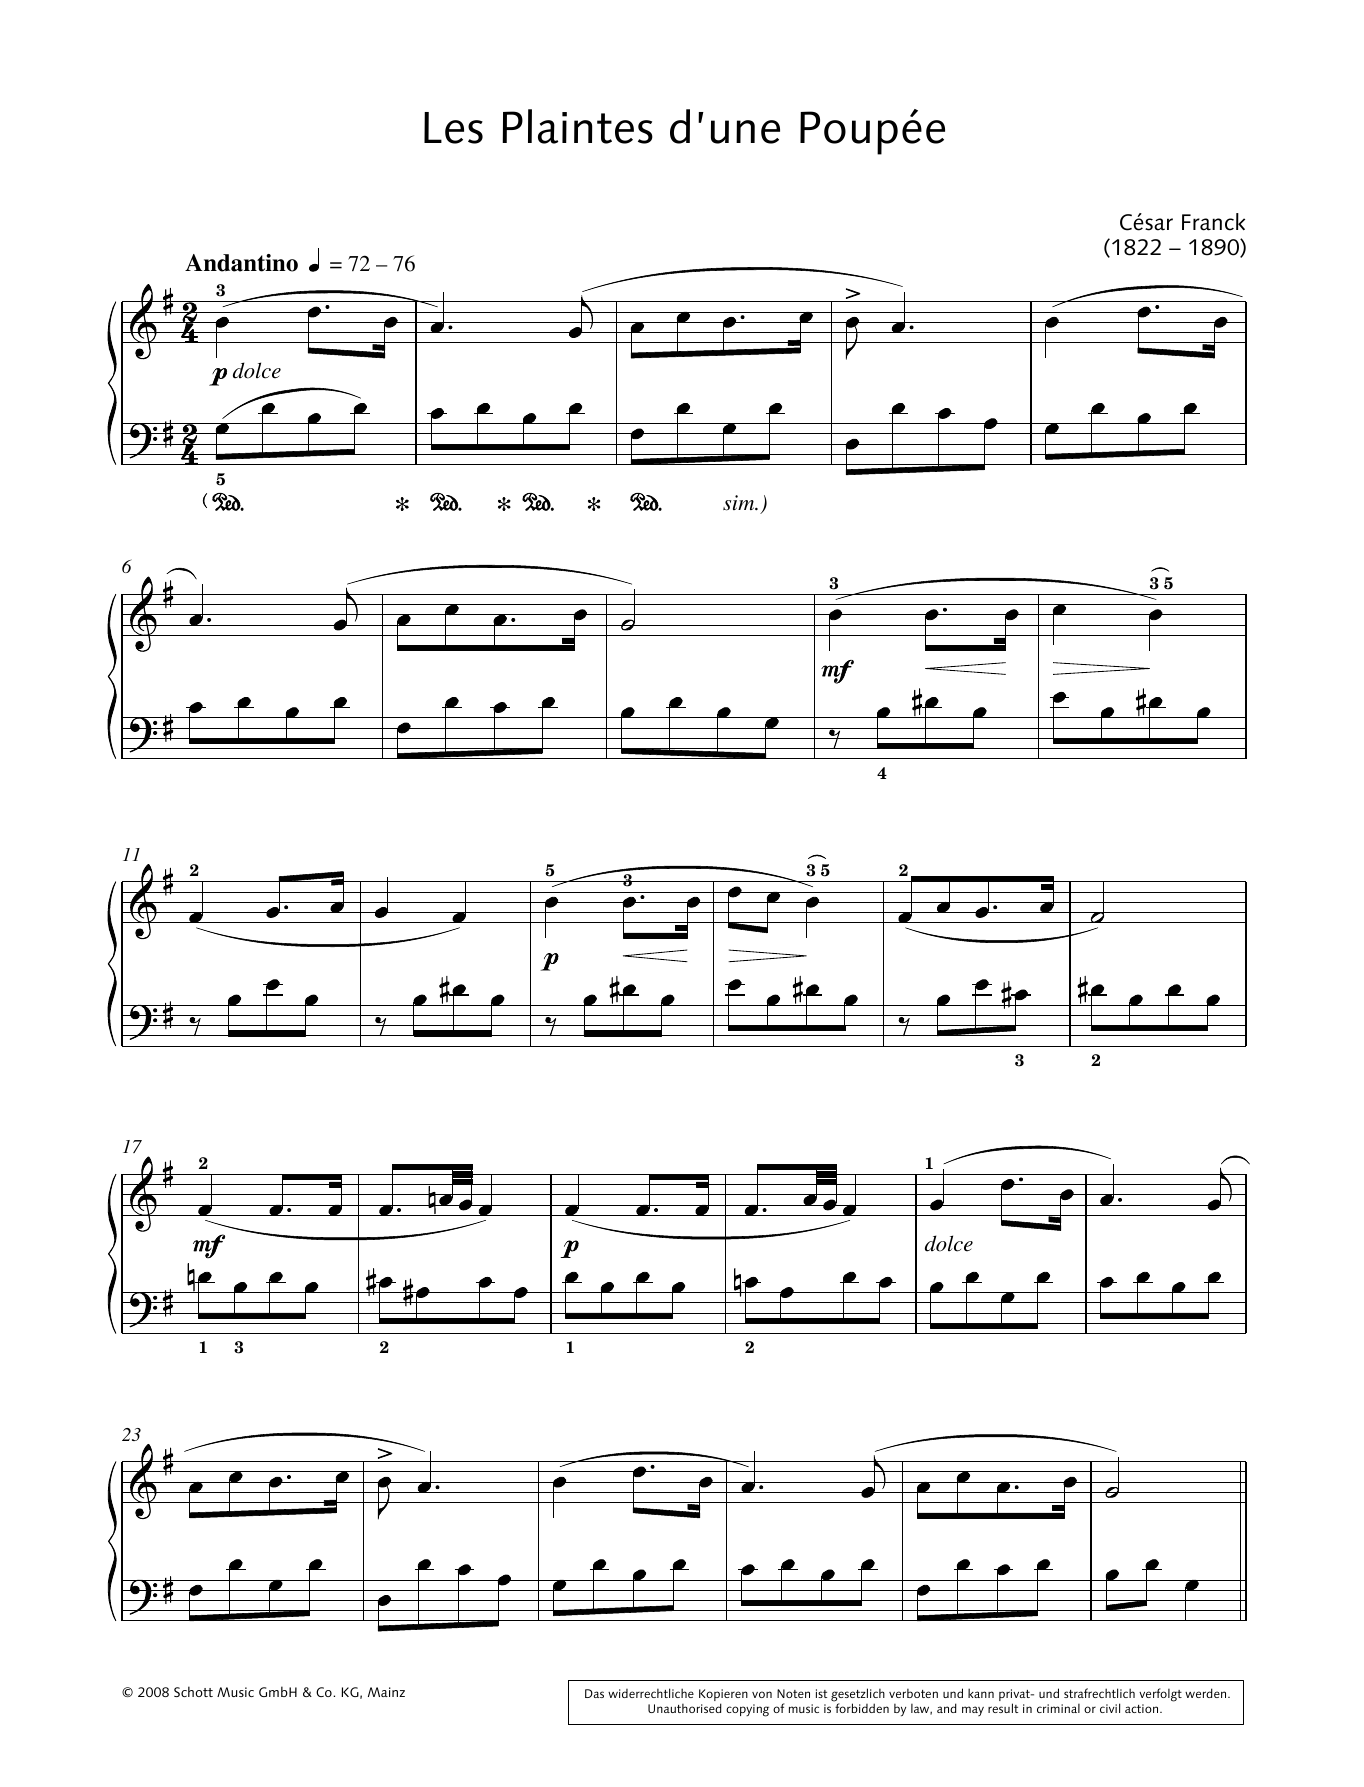 Hans-Gunter Heumann Les Plaintes d'une Poupée Sheet Music Notes & Chords for Piano Solo - Download or Print PDF